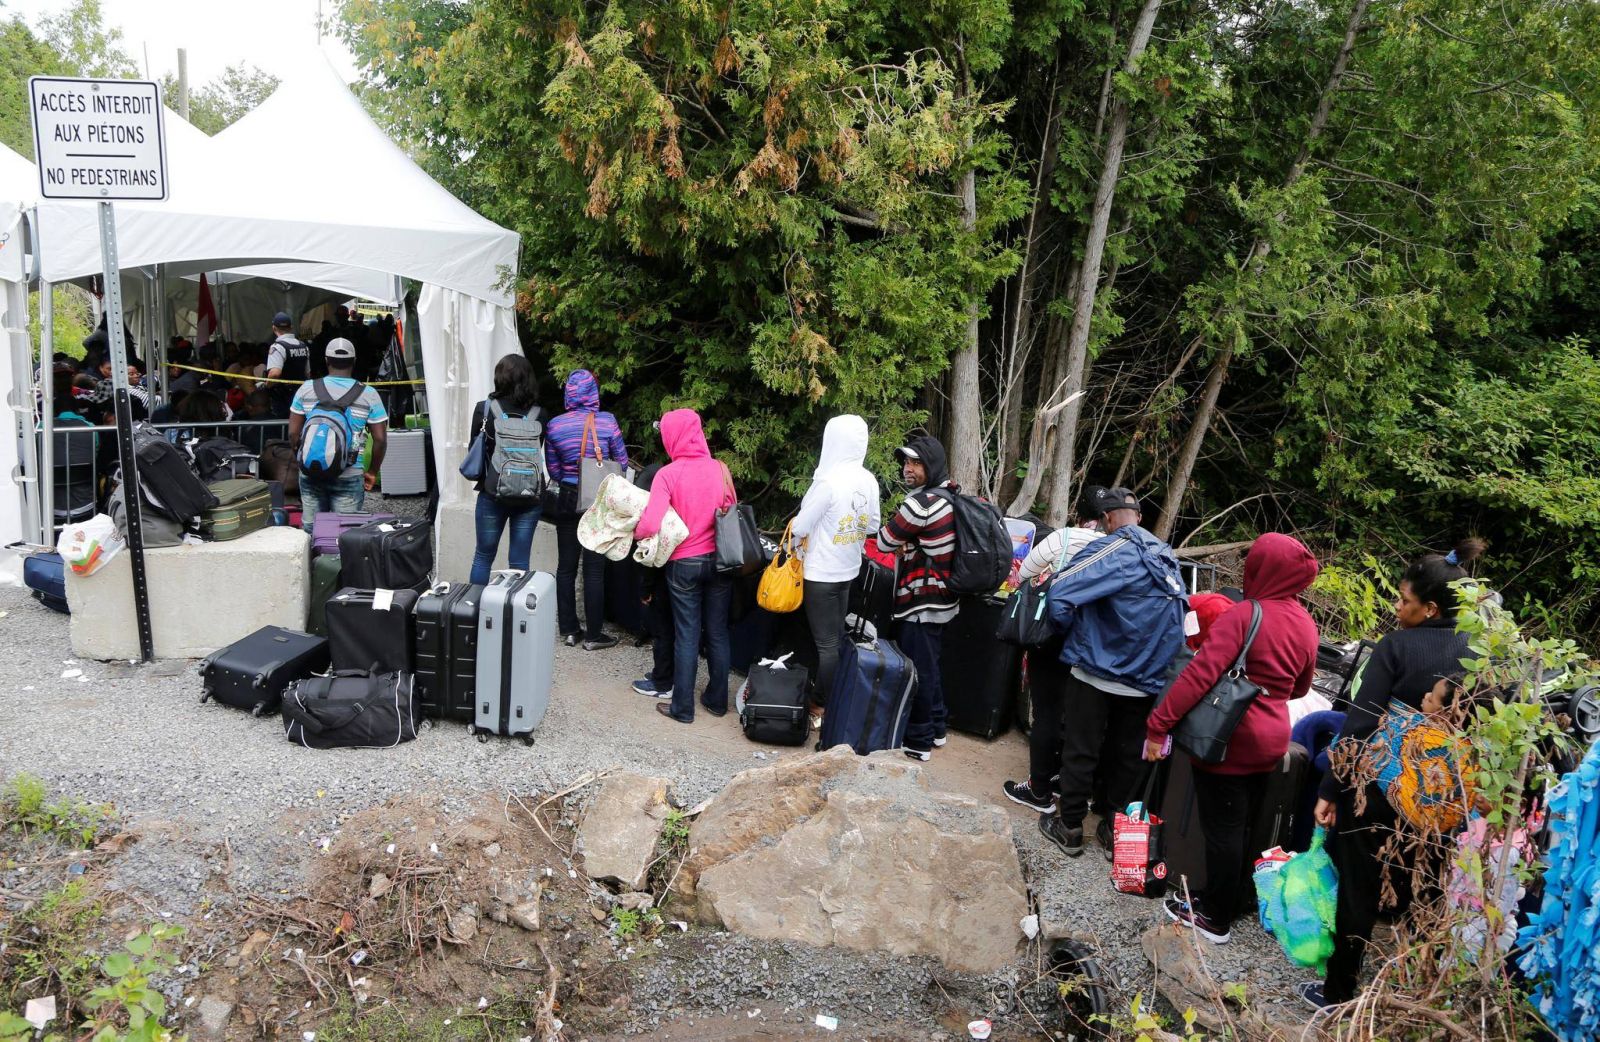 Nueva York “se deshace” de los inmigrantes enviándolos a la frontera con Canadá 